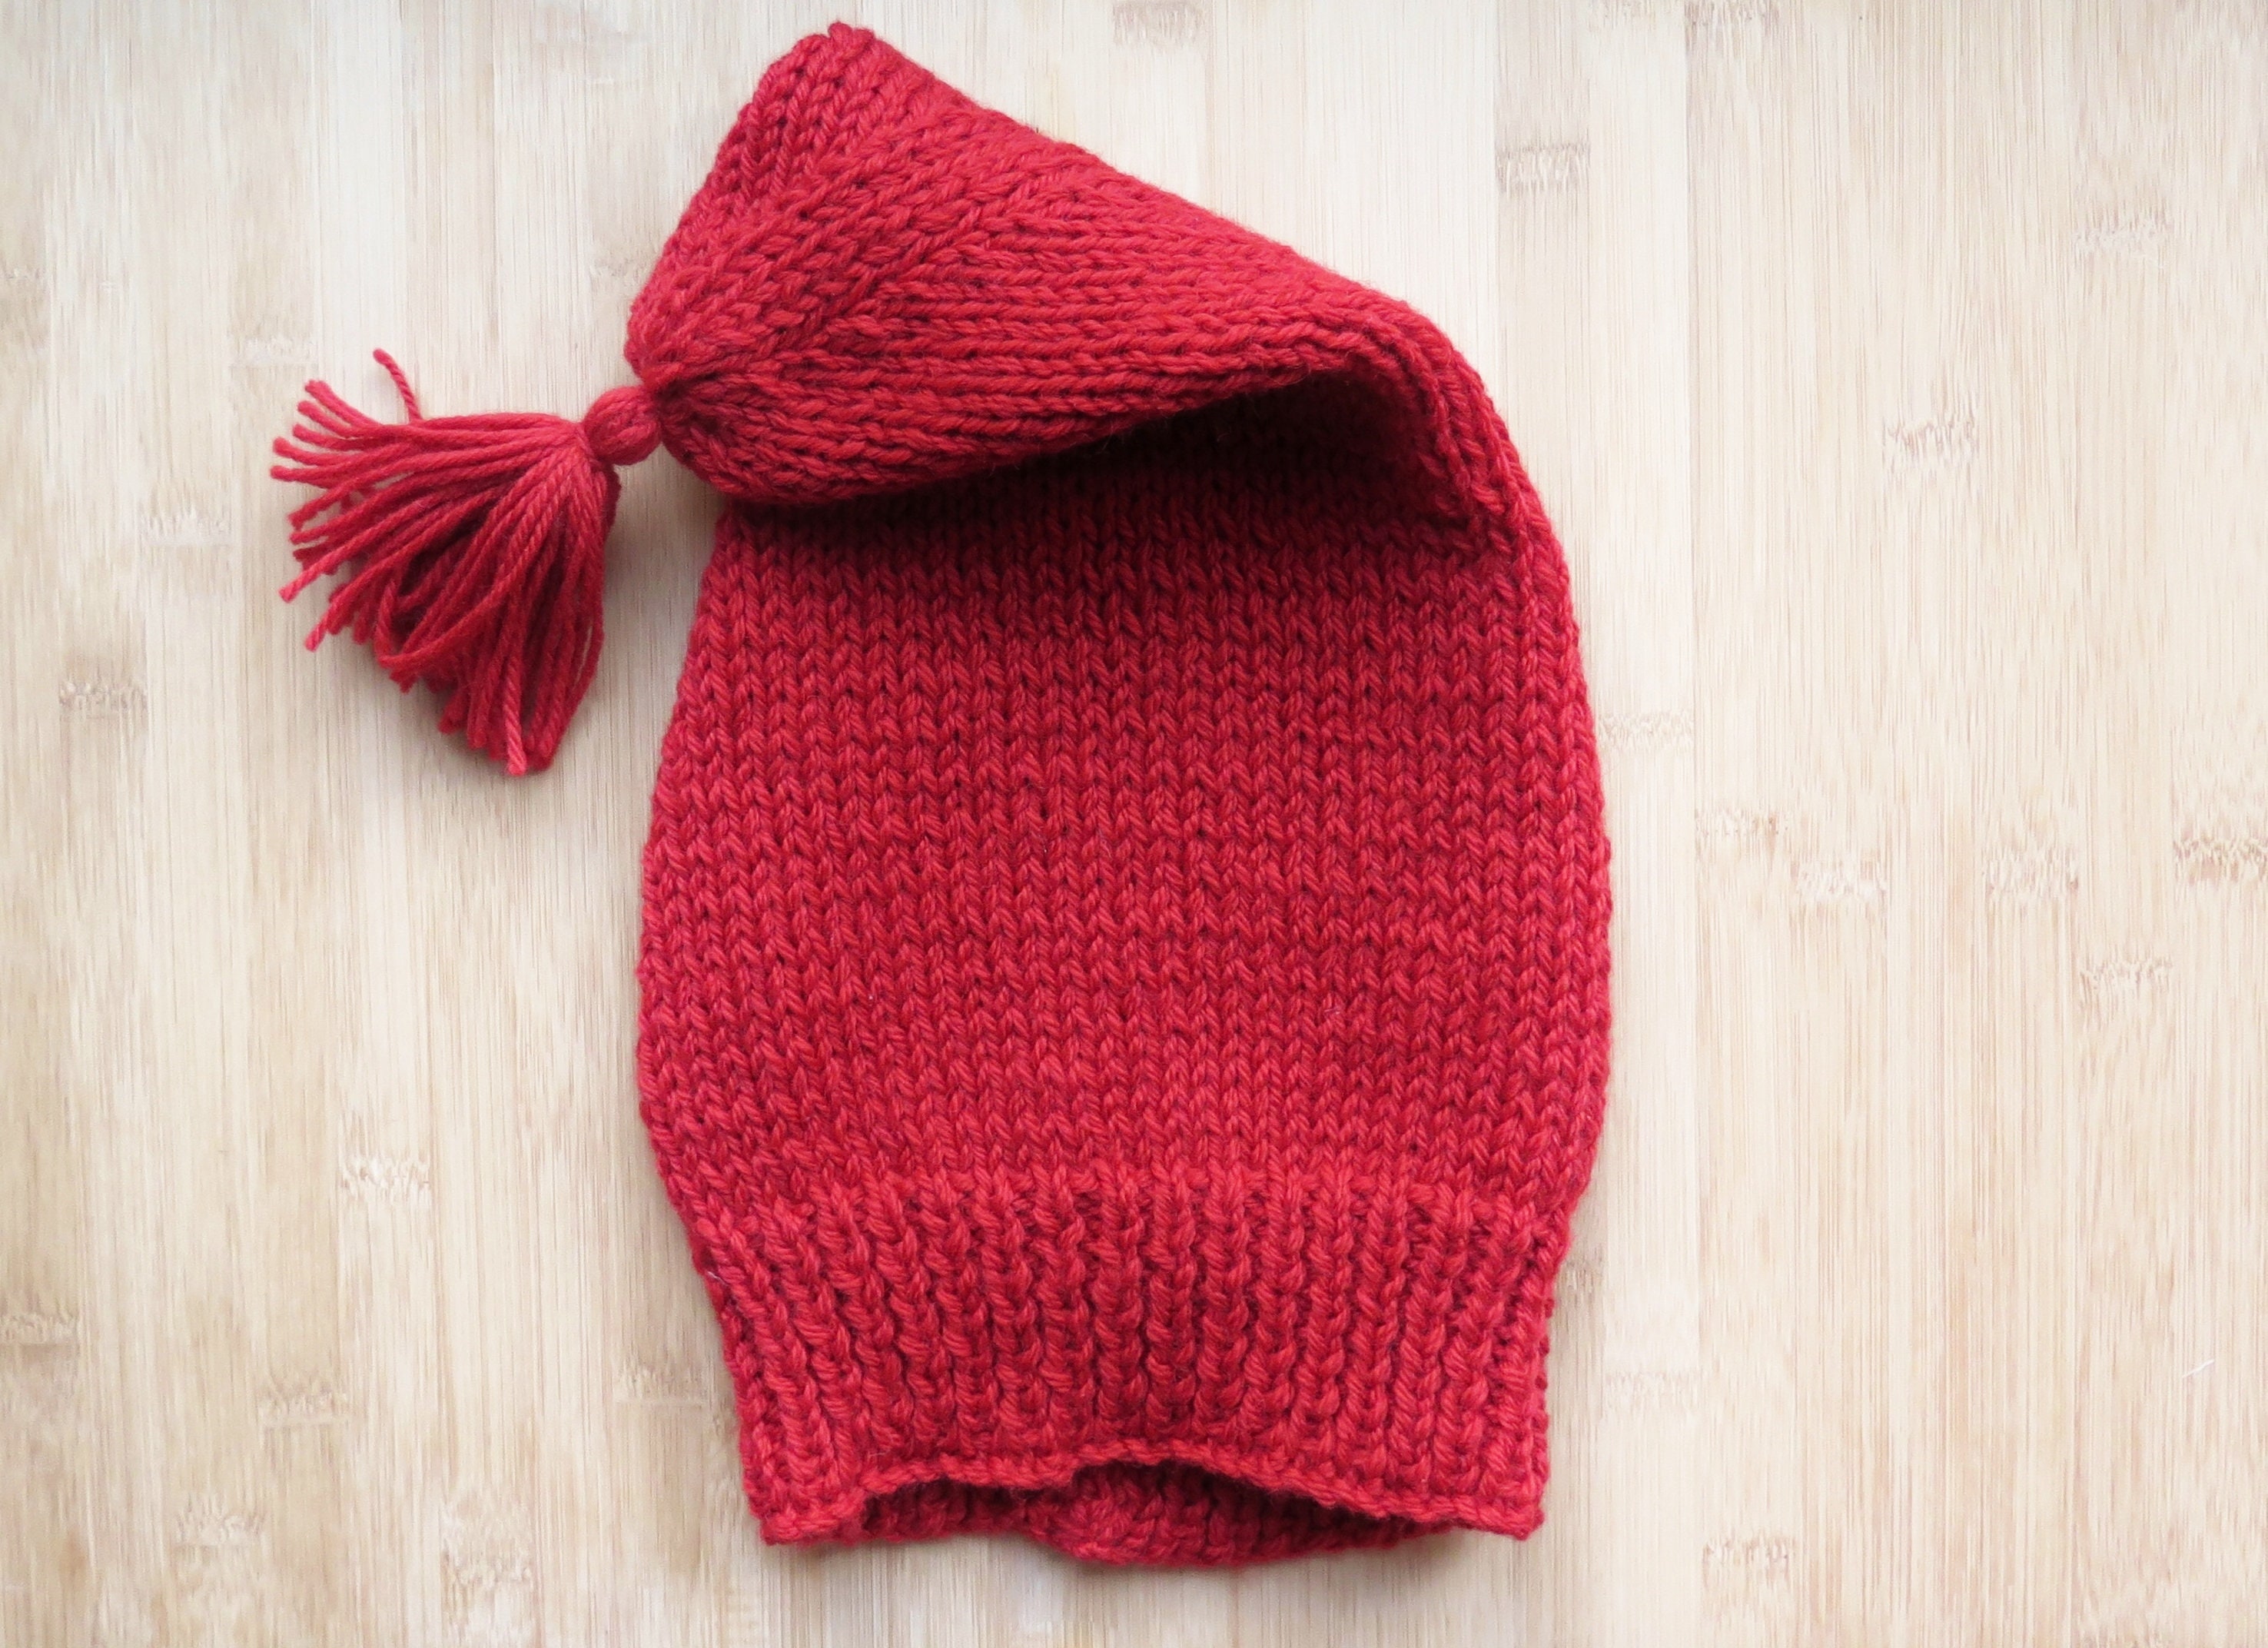 Knitted folding craft/knitting storage bag/basket Knitting pattern by Sarah  Dennis